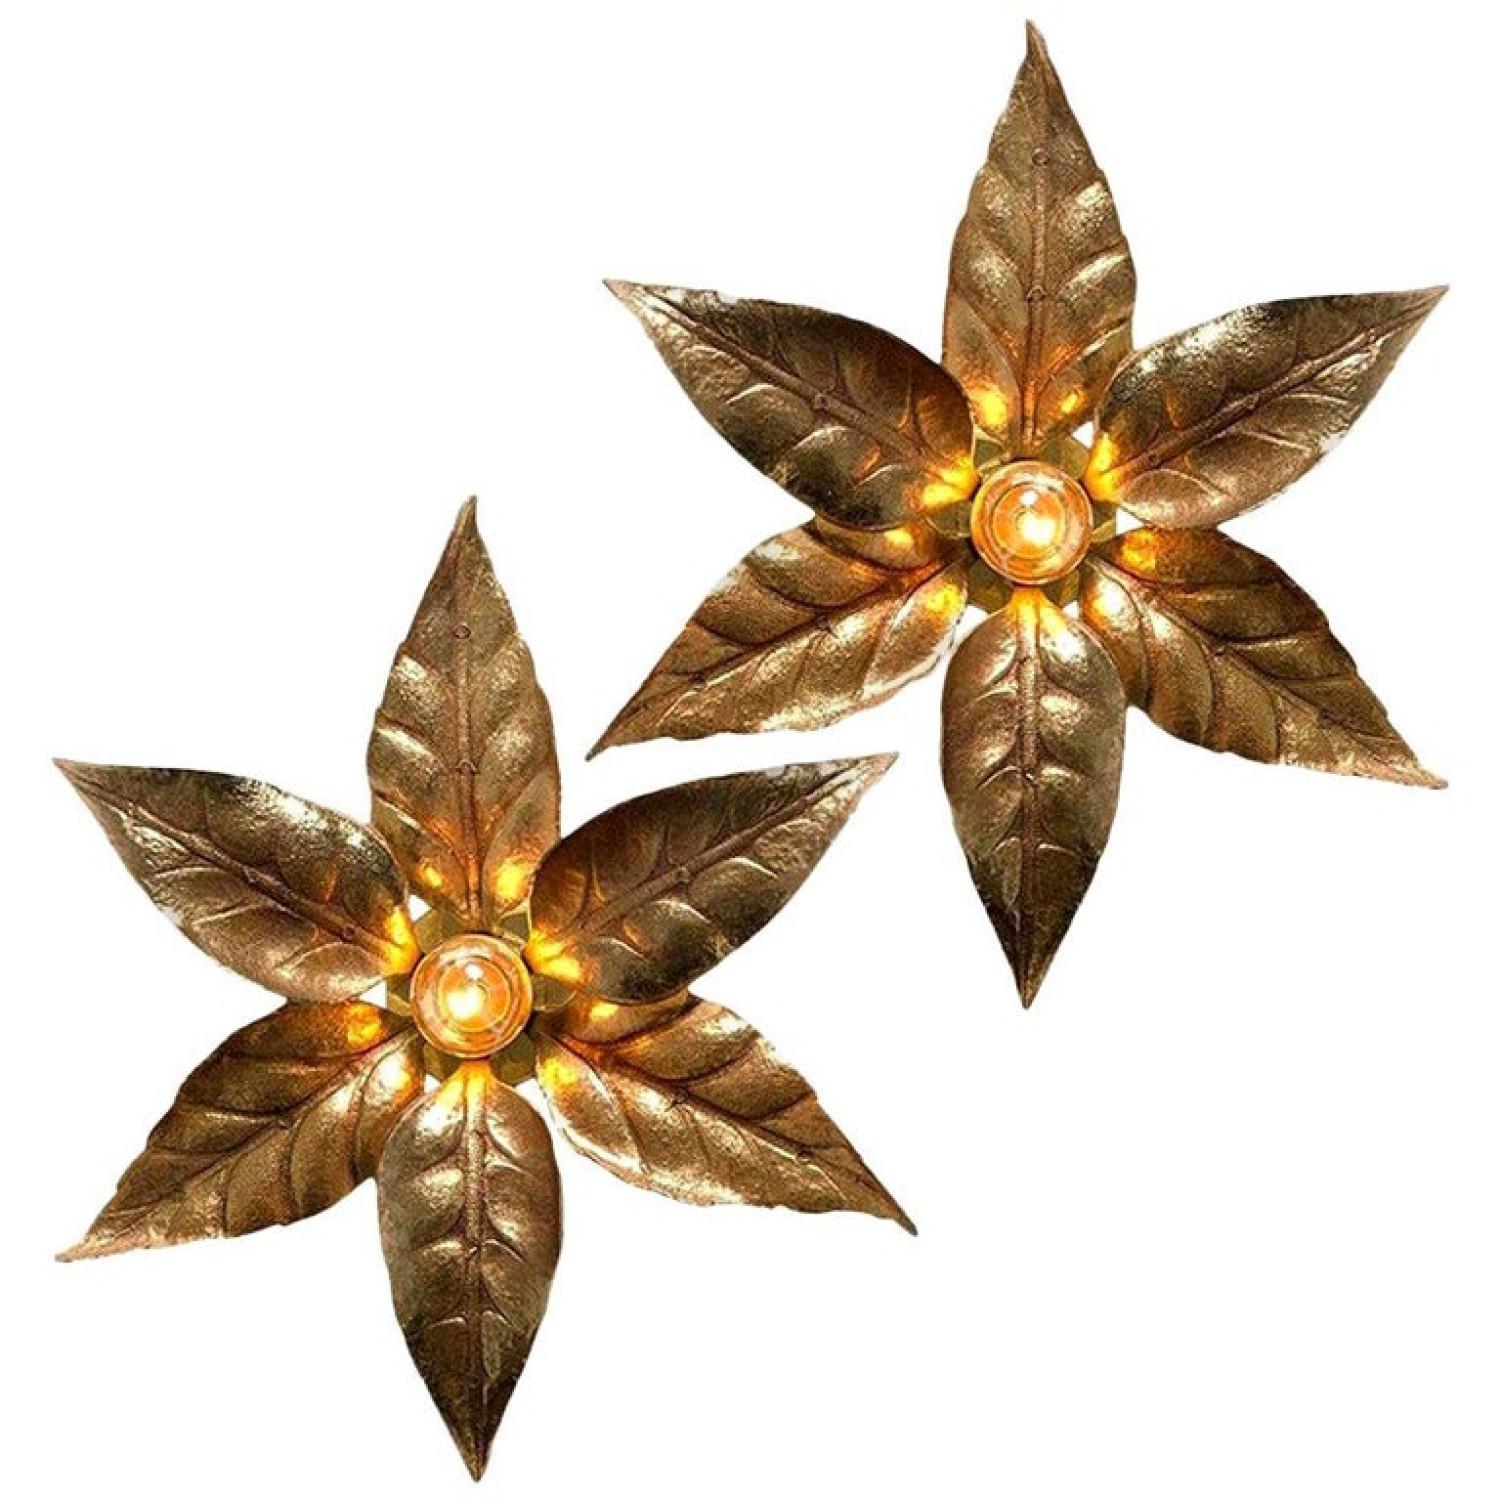 Hübsches Paar Blumen-Wandleuchten aus Messing im Stil des Designers Willy Daro, hergestellt von 'Massive Lighting', ca. 1970er Jahre in Belgien, Europa. Diese dekorative und schöne skulpturale Leuchte besteht aus einem Paar vermessingter Blumen auf